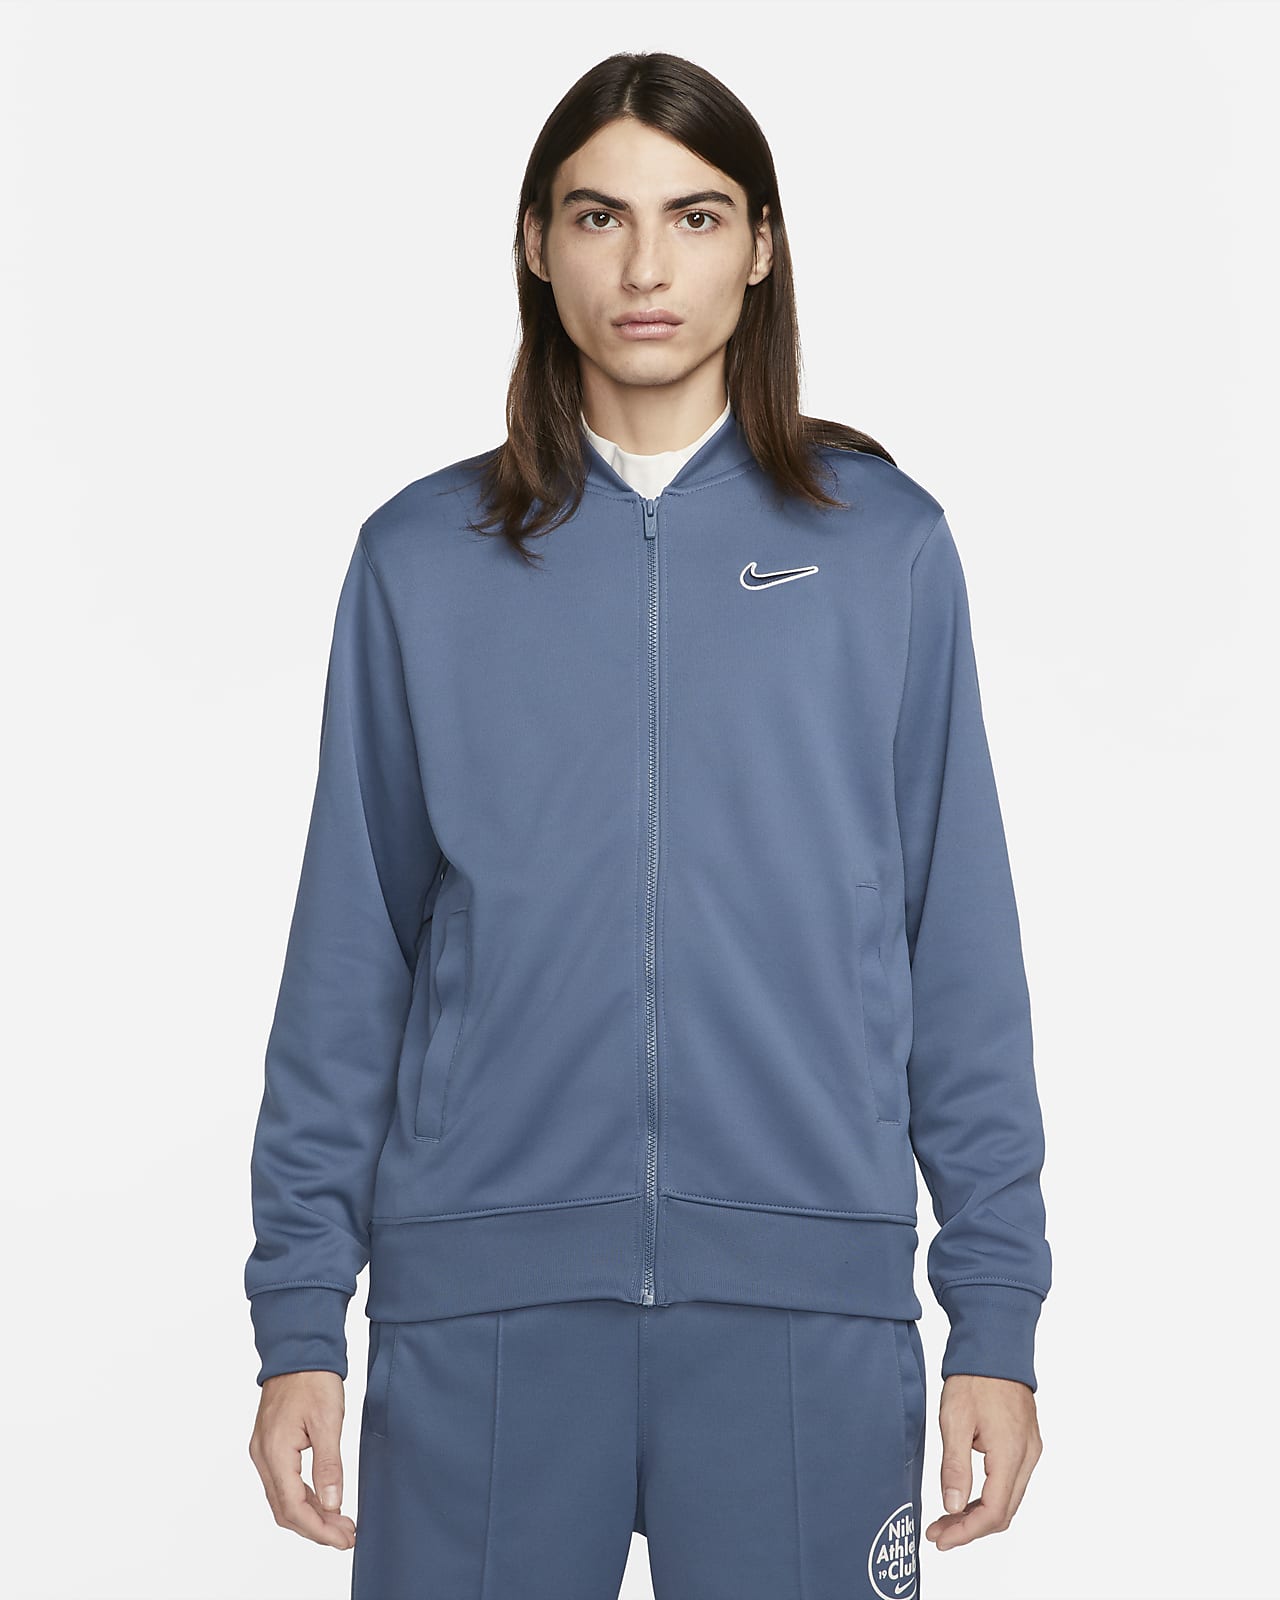 Nike Sportswear Men's Bomber Jacket